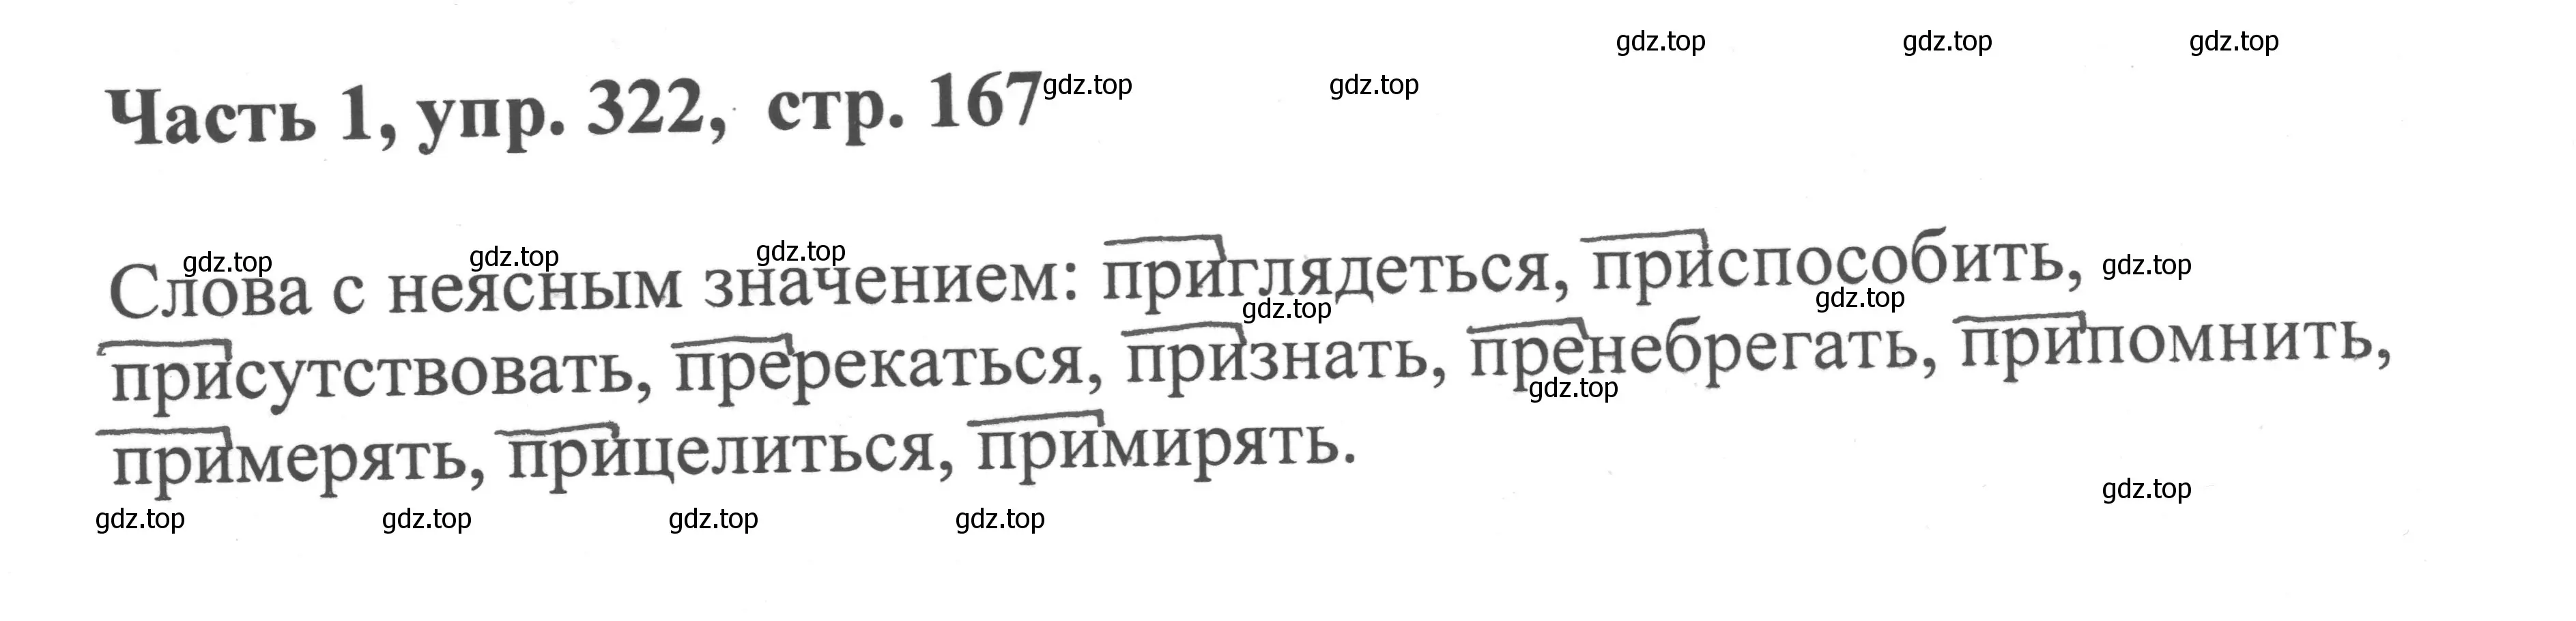 Решение номер 322 (страница 167) гдз по русскому языку 6 класс Баранов, Ладыженская, учебник 1 часть